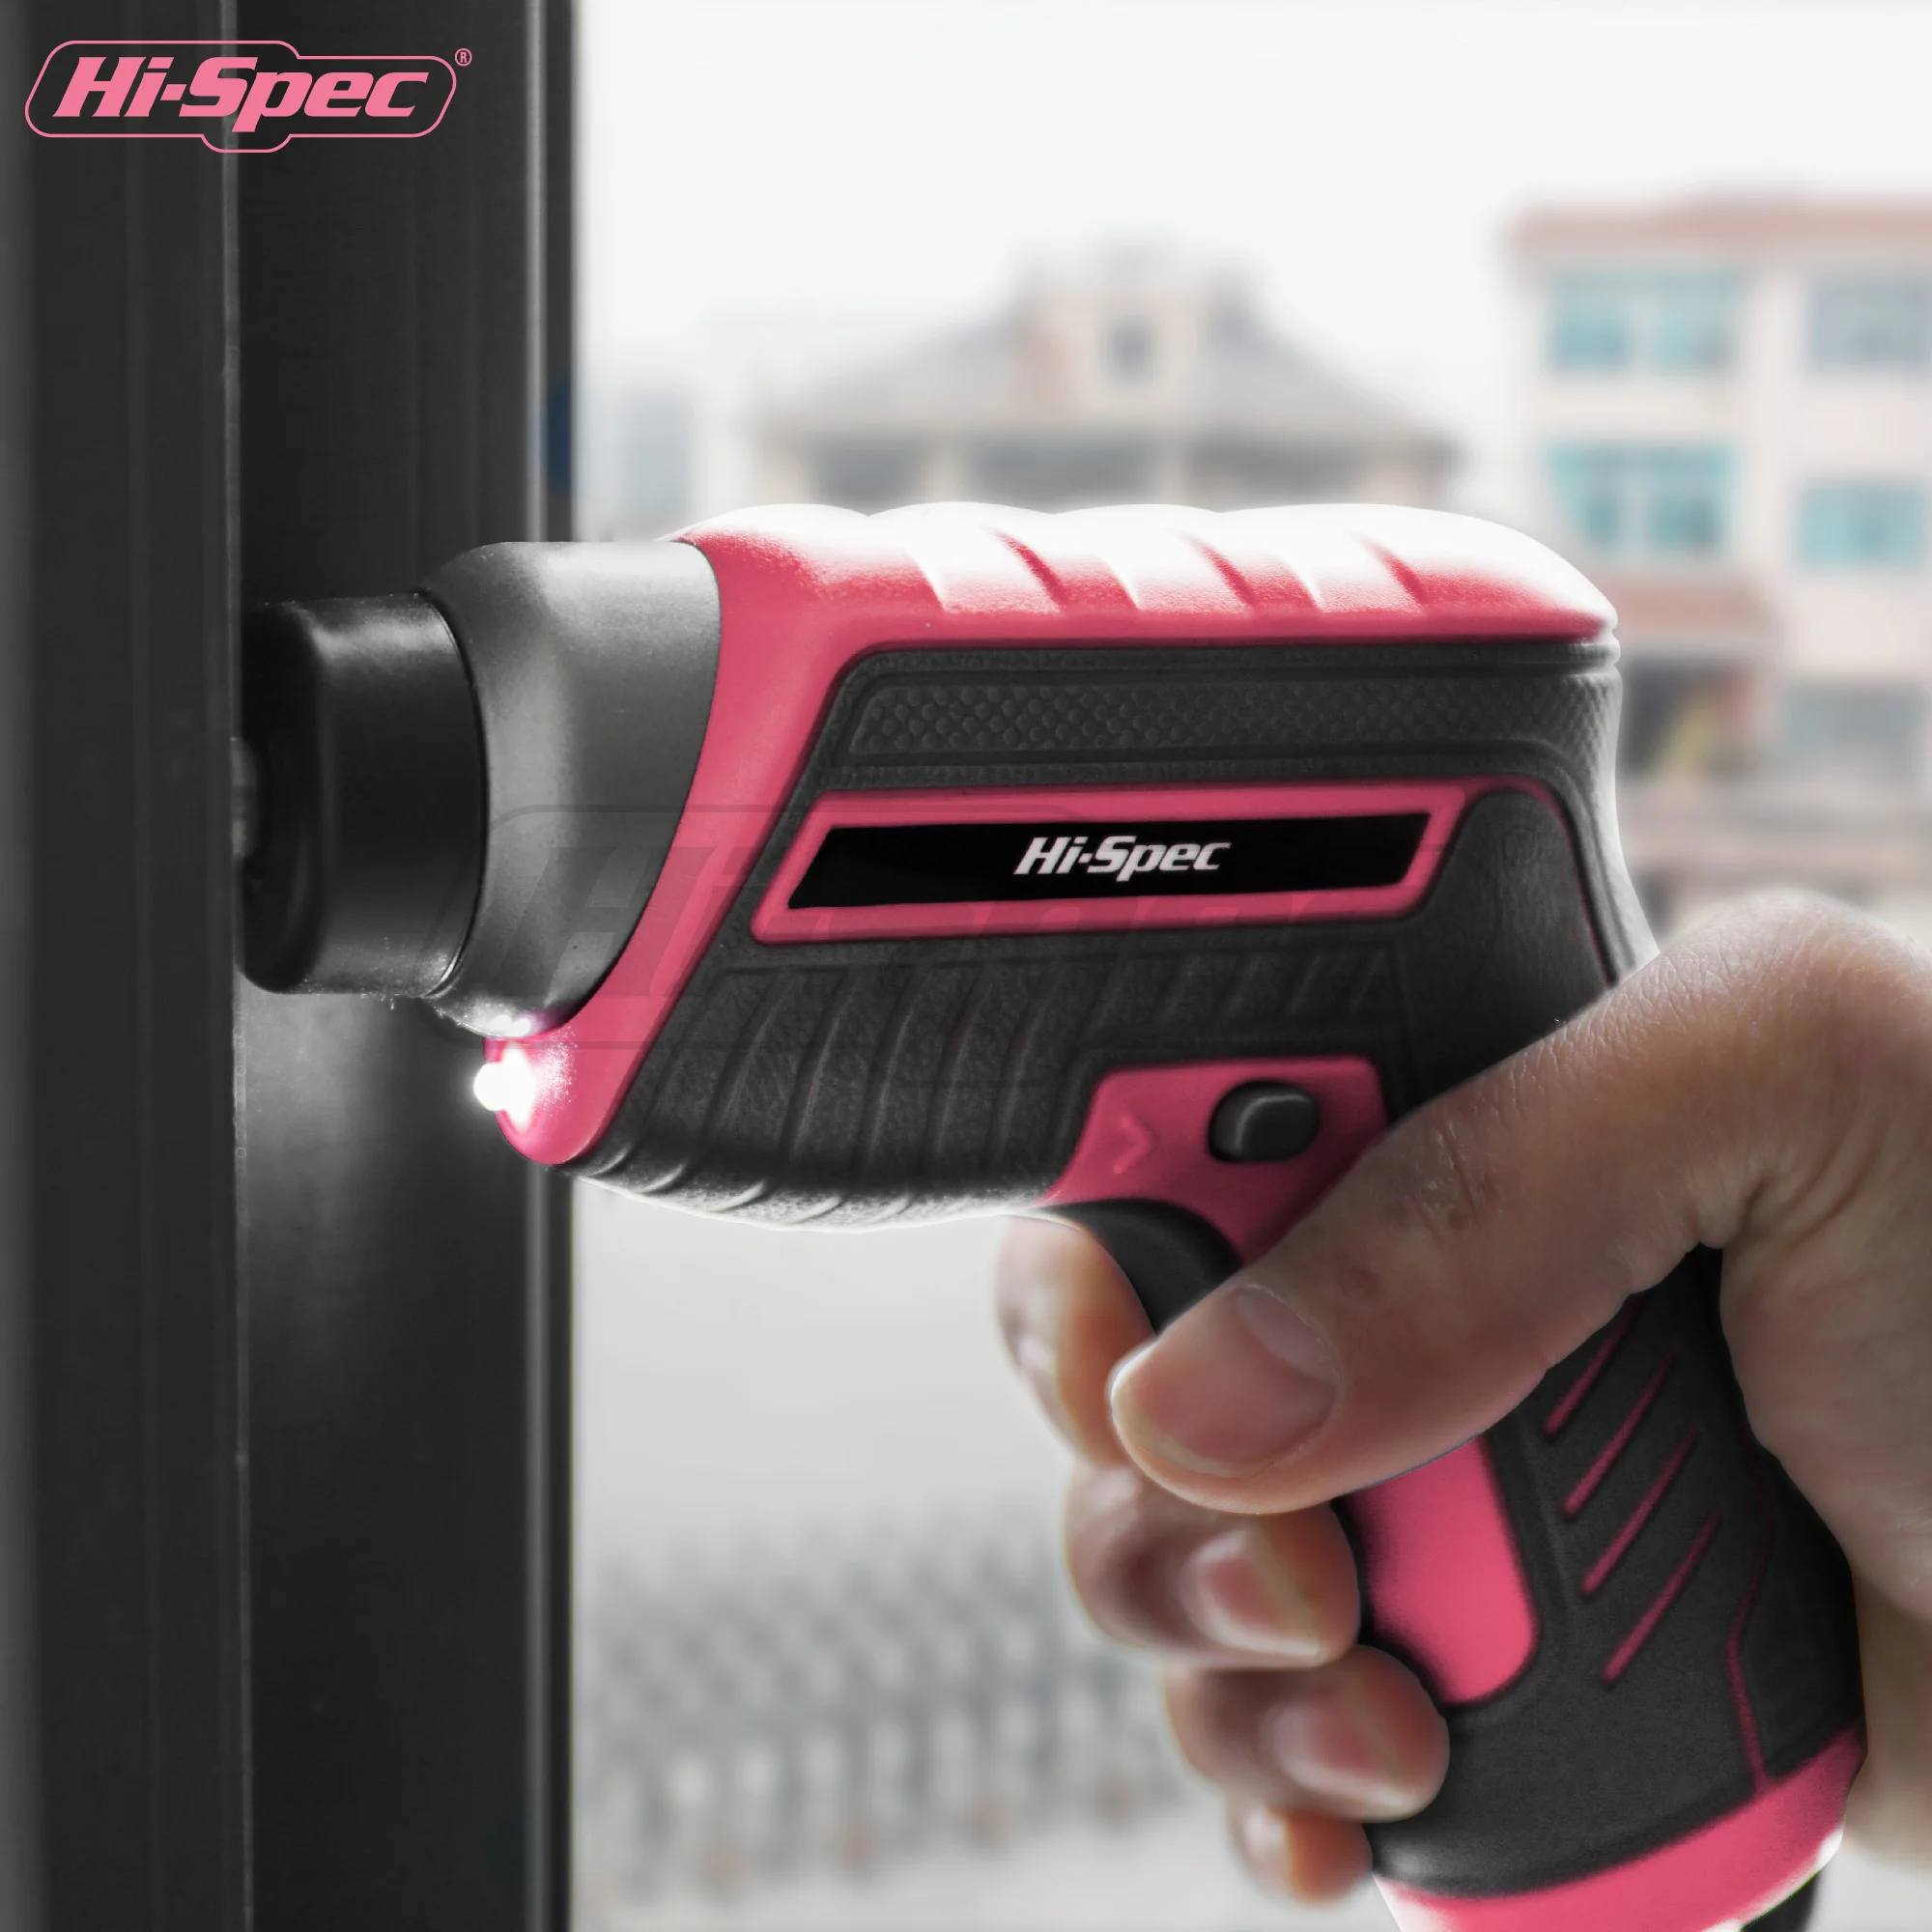 Hi-Spec 3 Piece 3.6V Cordless Electric Power Scissors — HI-SPEC® Tools  Official Site